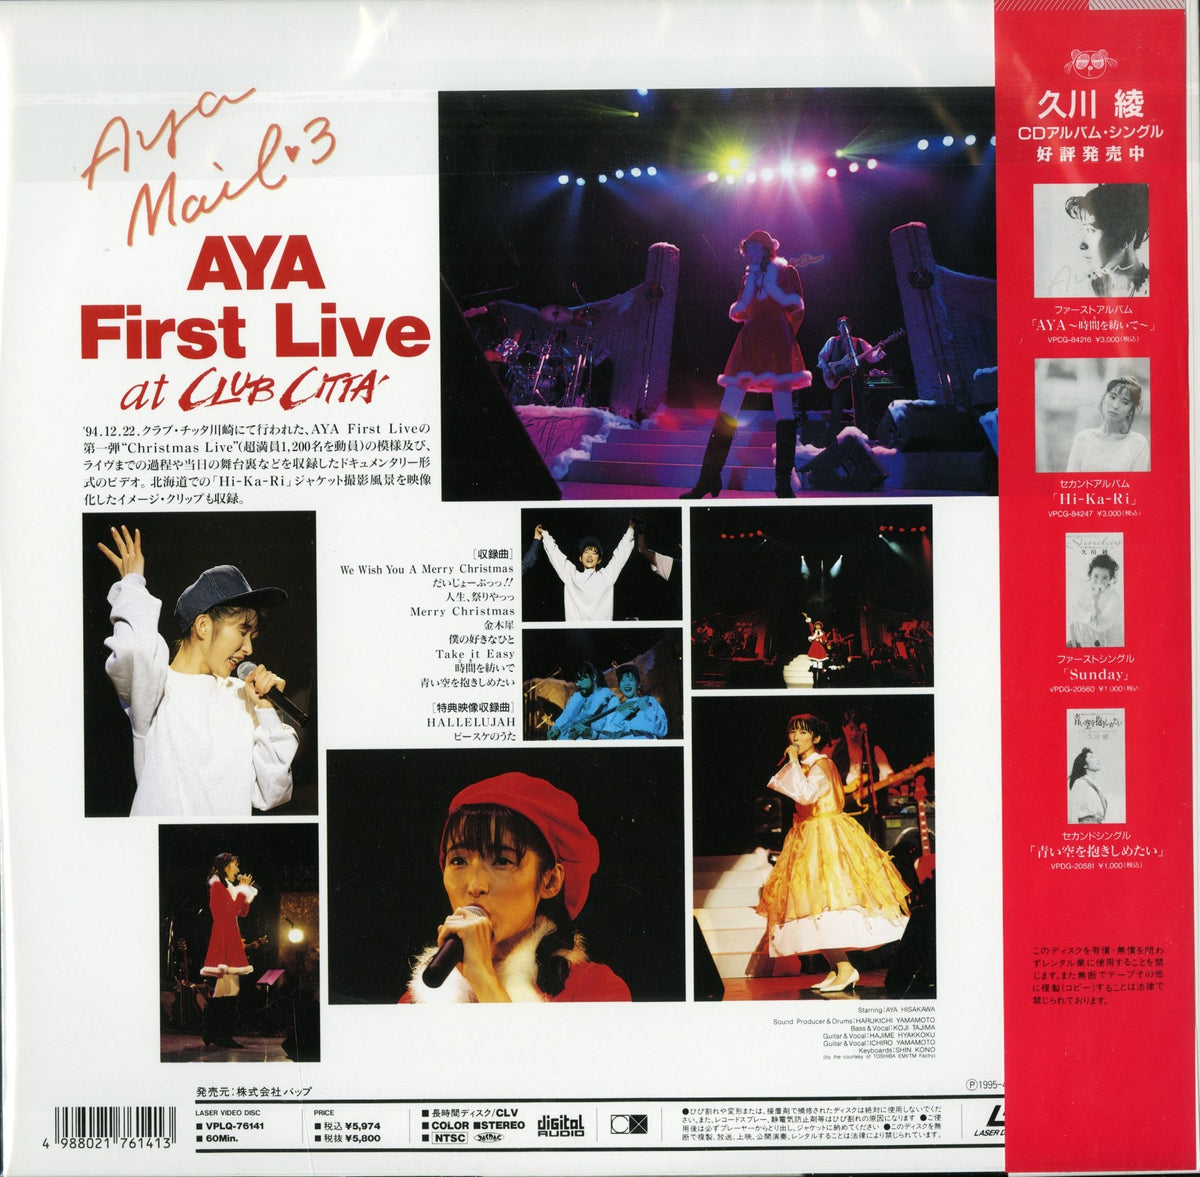 VHS】久川綾 AYA FIRST LIVE 【1994.12.22】-